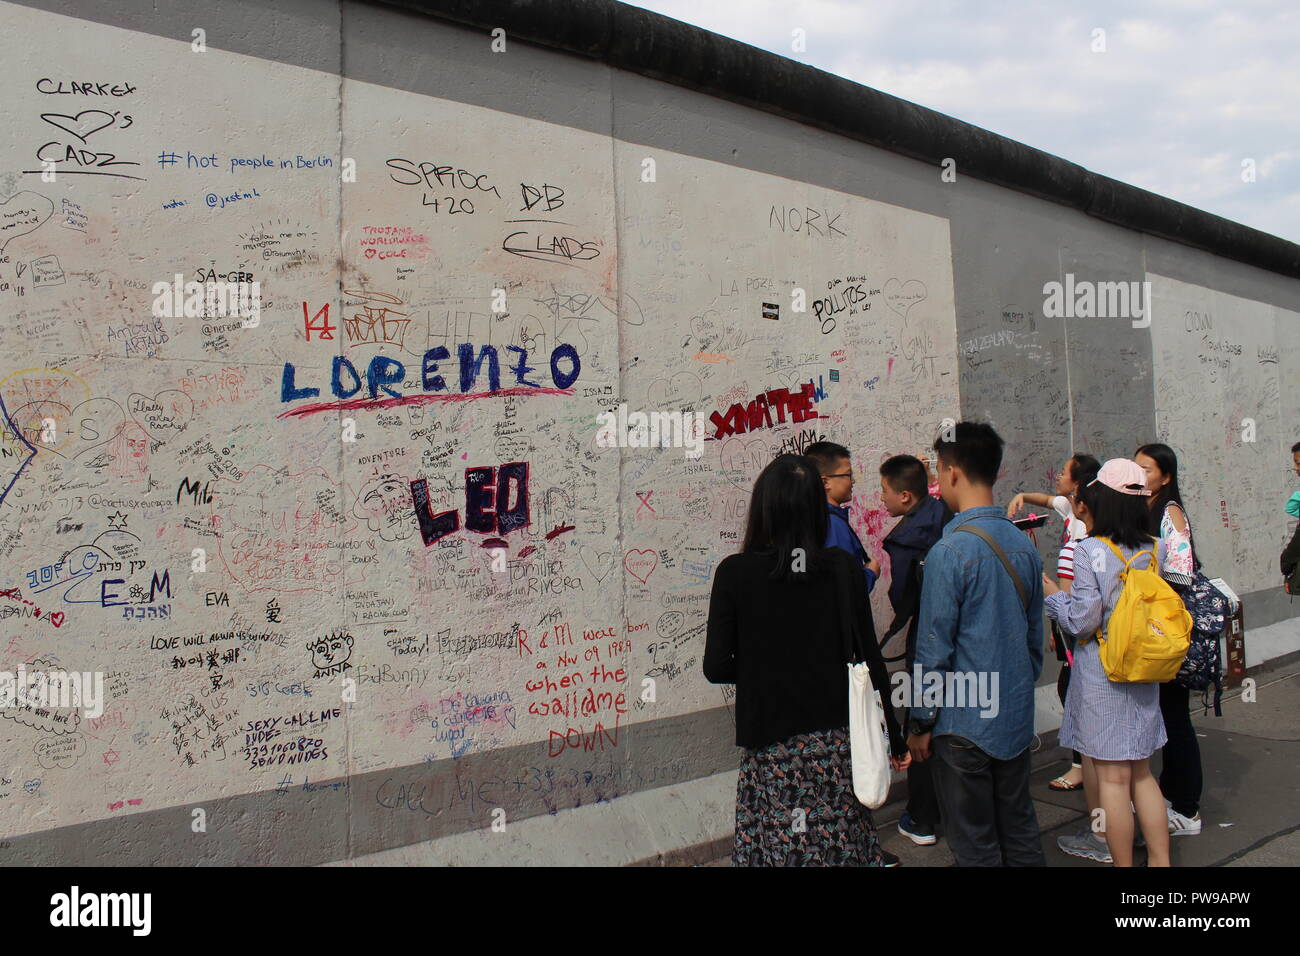 Les touristes japonais en regardant un graffiti sur une section du mur de Berlin, East Side Gallery - Été 2018 Banque D'Images